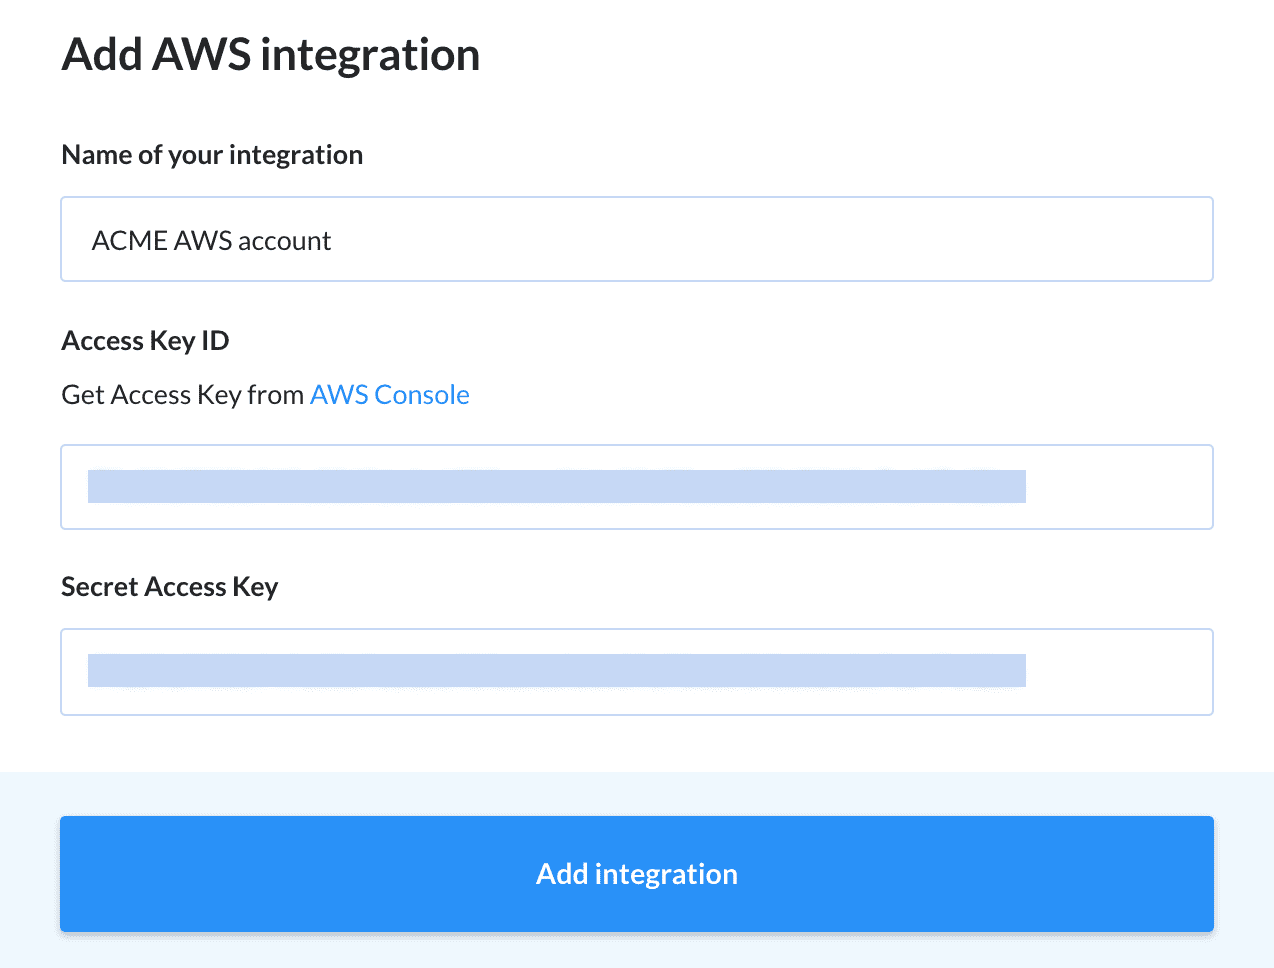 Adding an AWS integration